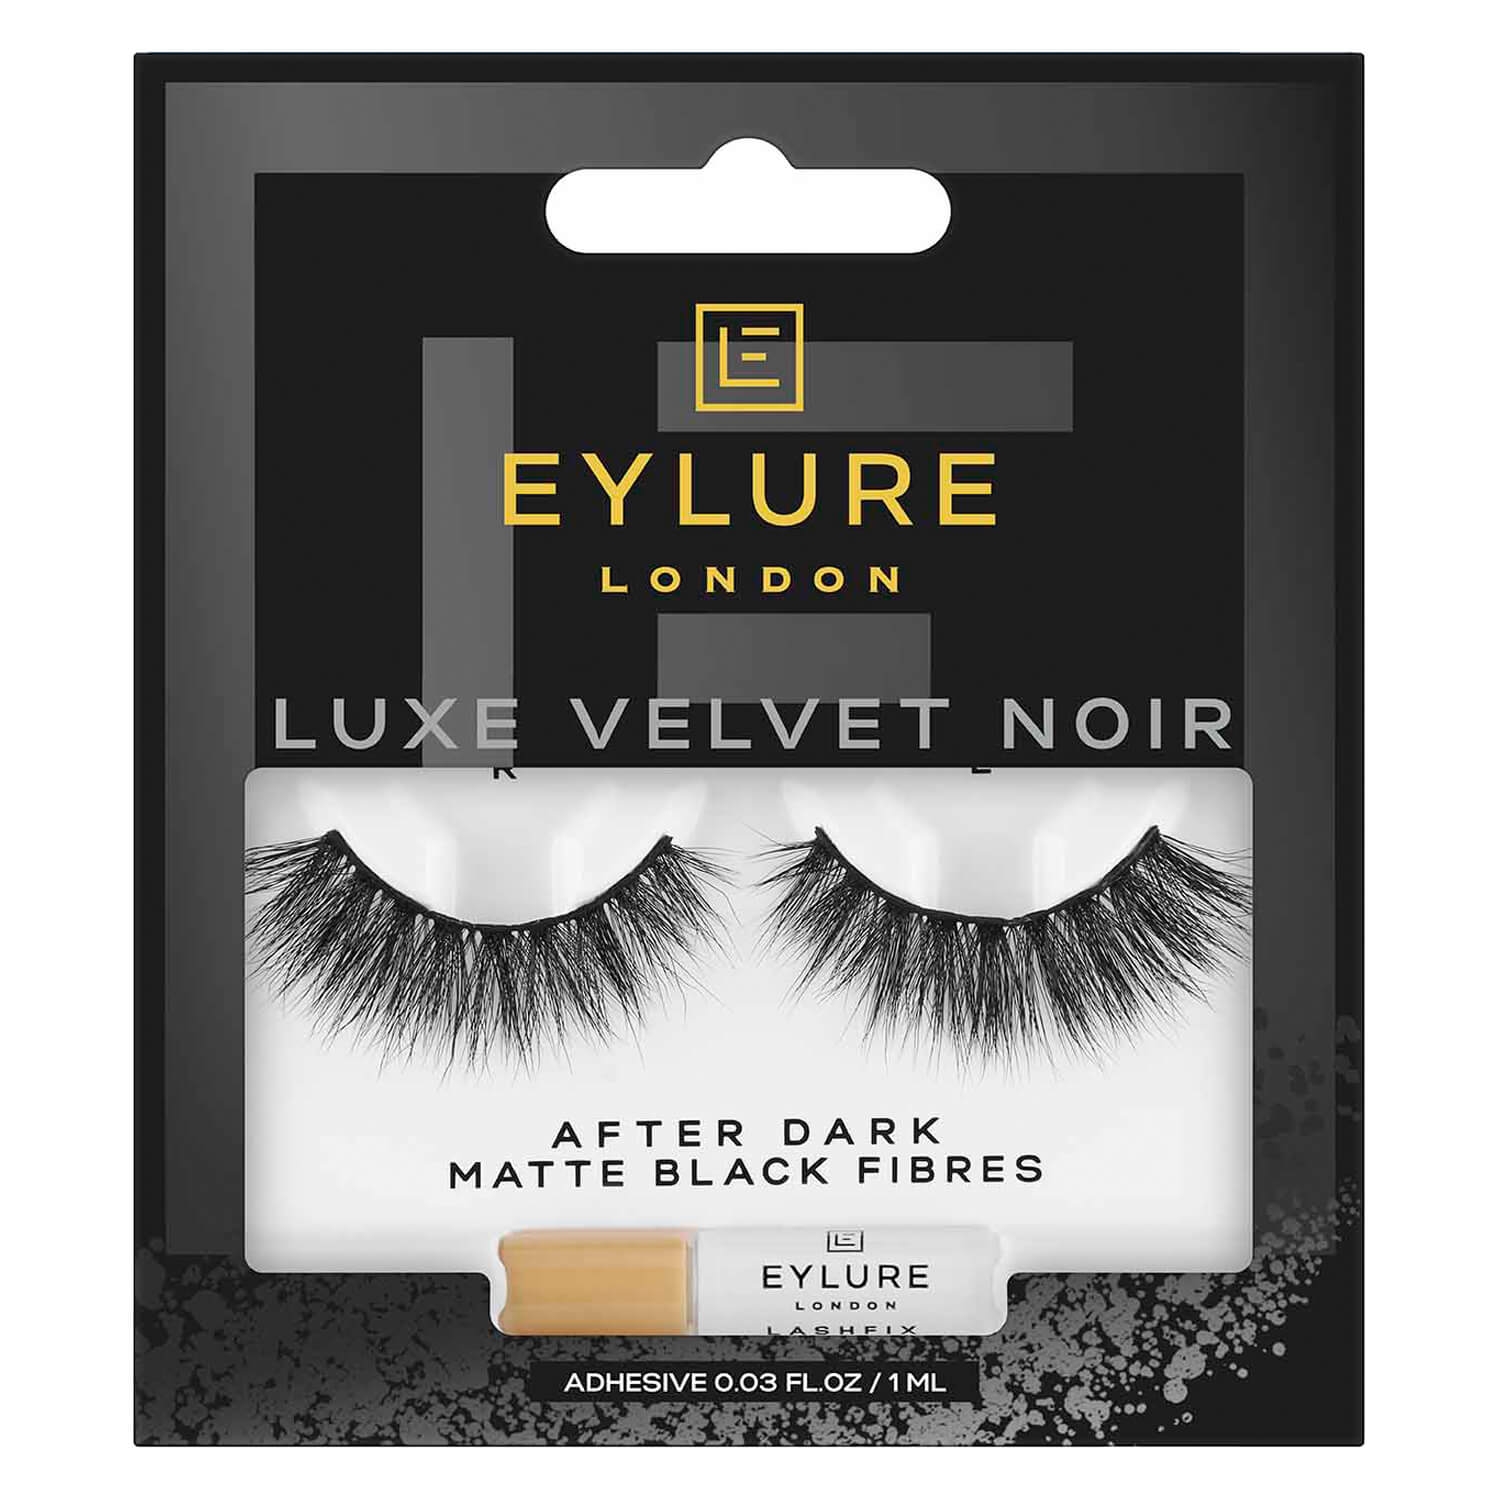 Produktbild von EYLURE - Luxe Velvet Noir After Dark